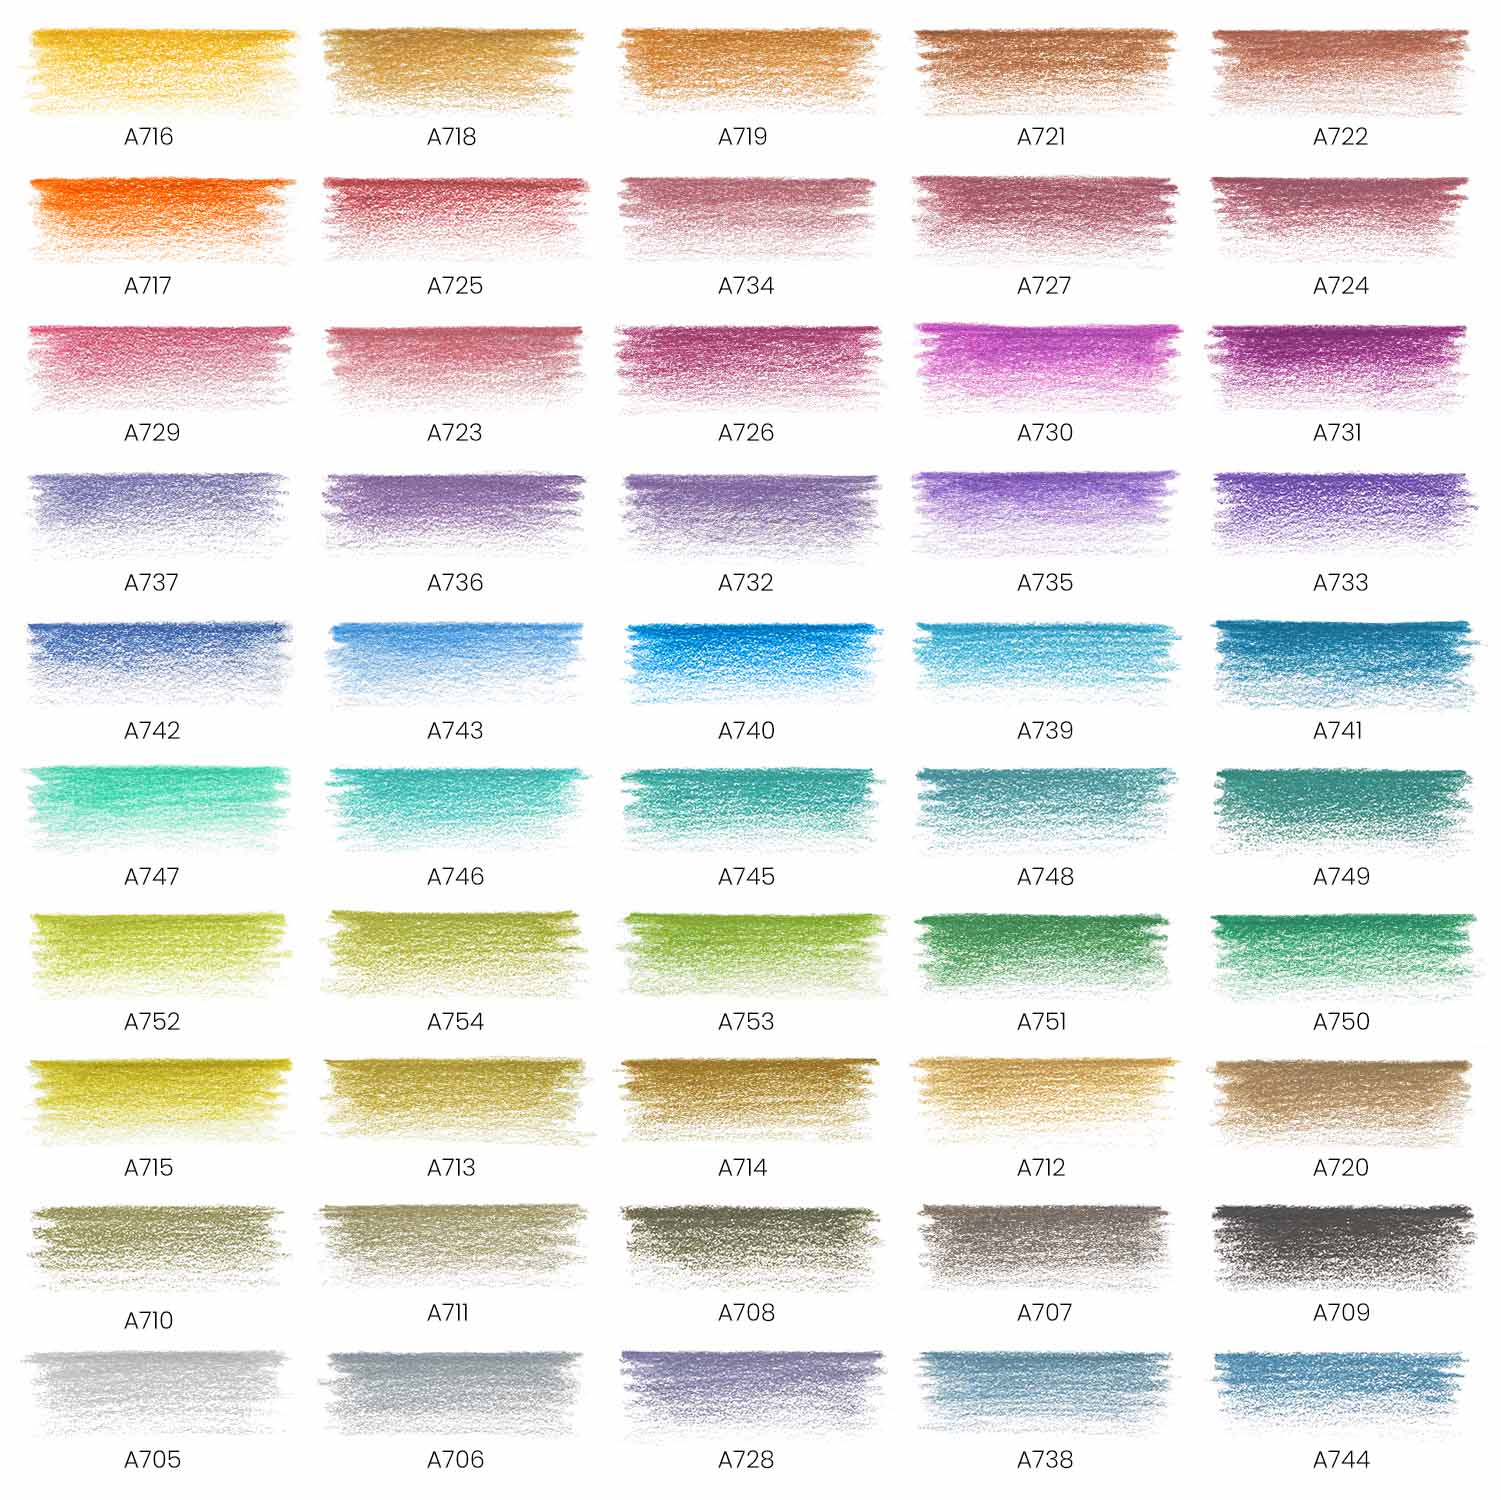 152Colored Pencils Premium Soft Core Colors Pencils Set for Adult Coloring  Books